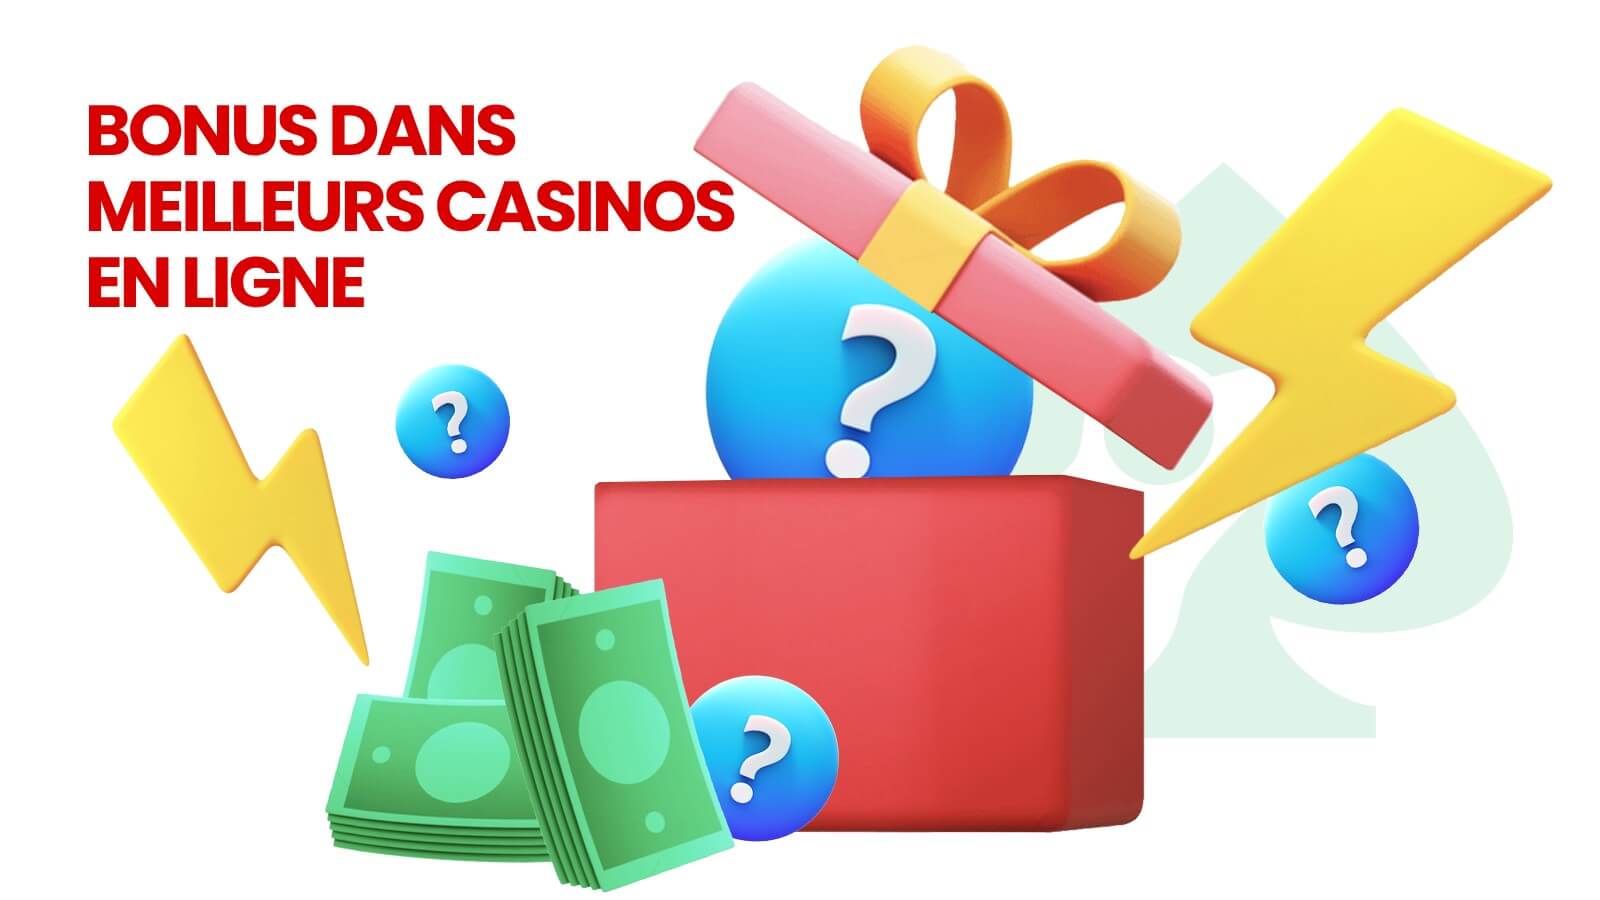 Bonus dans les meilleurs casinos en ligne